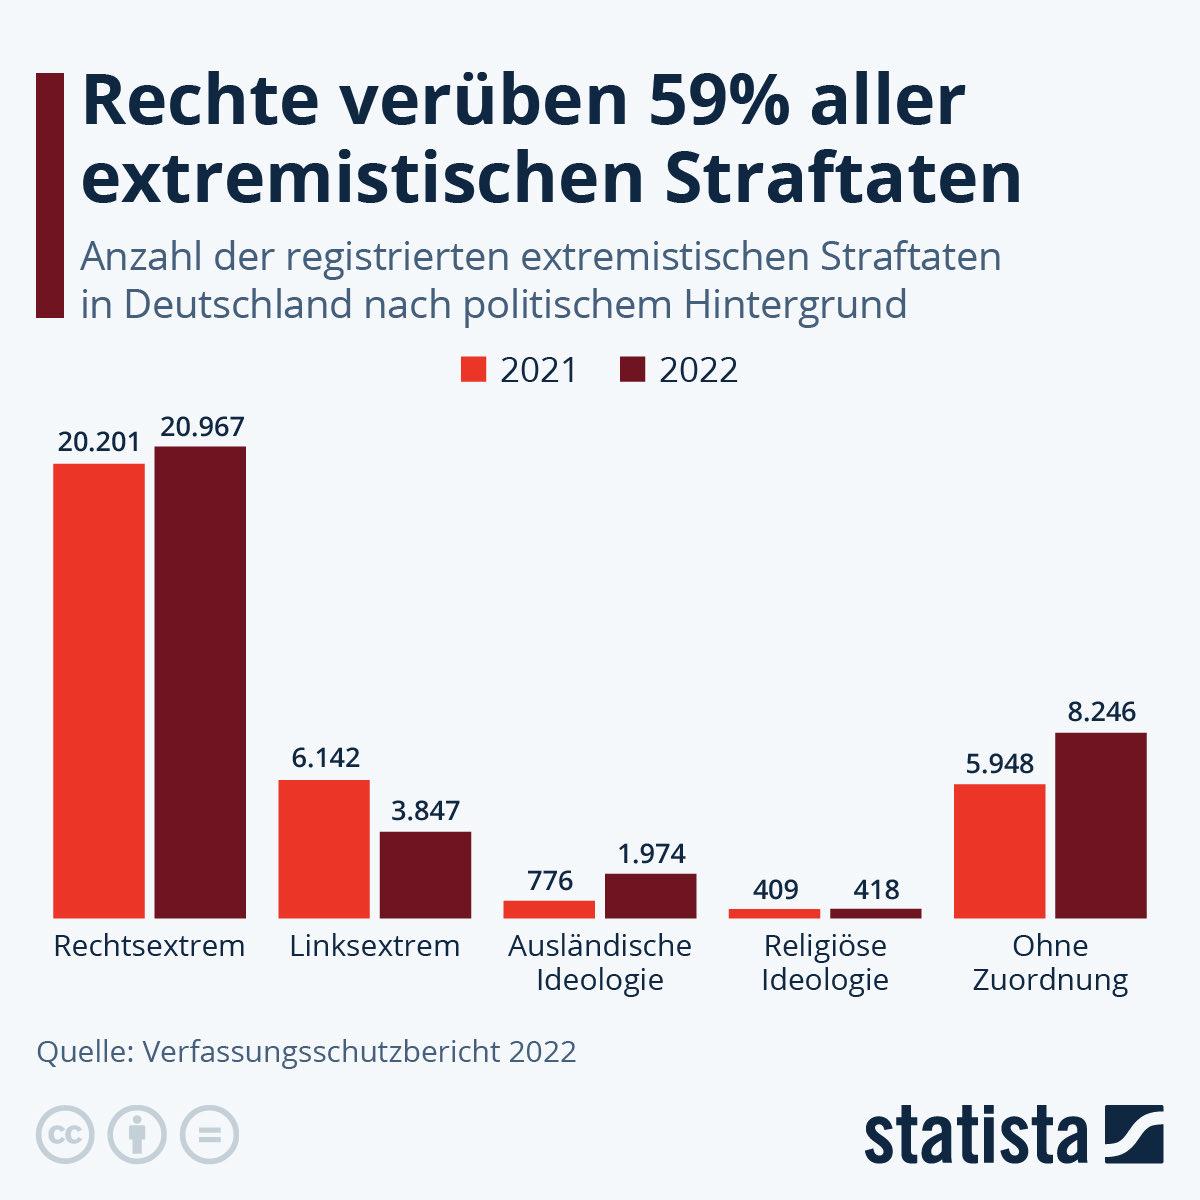 Naja, die Kriminalstatistik zeichnet ein anderes Bild. 

Die meisten extremistischen Straftaten stammen von rechts.

#RechtsstaatOderWertediktatur